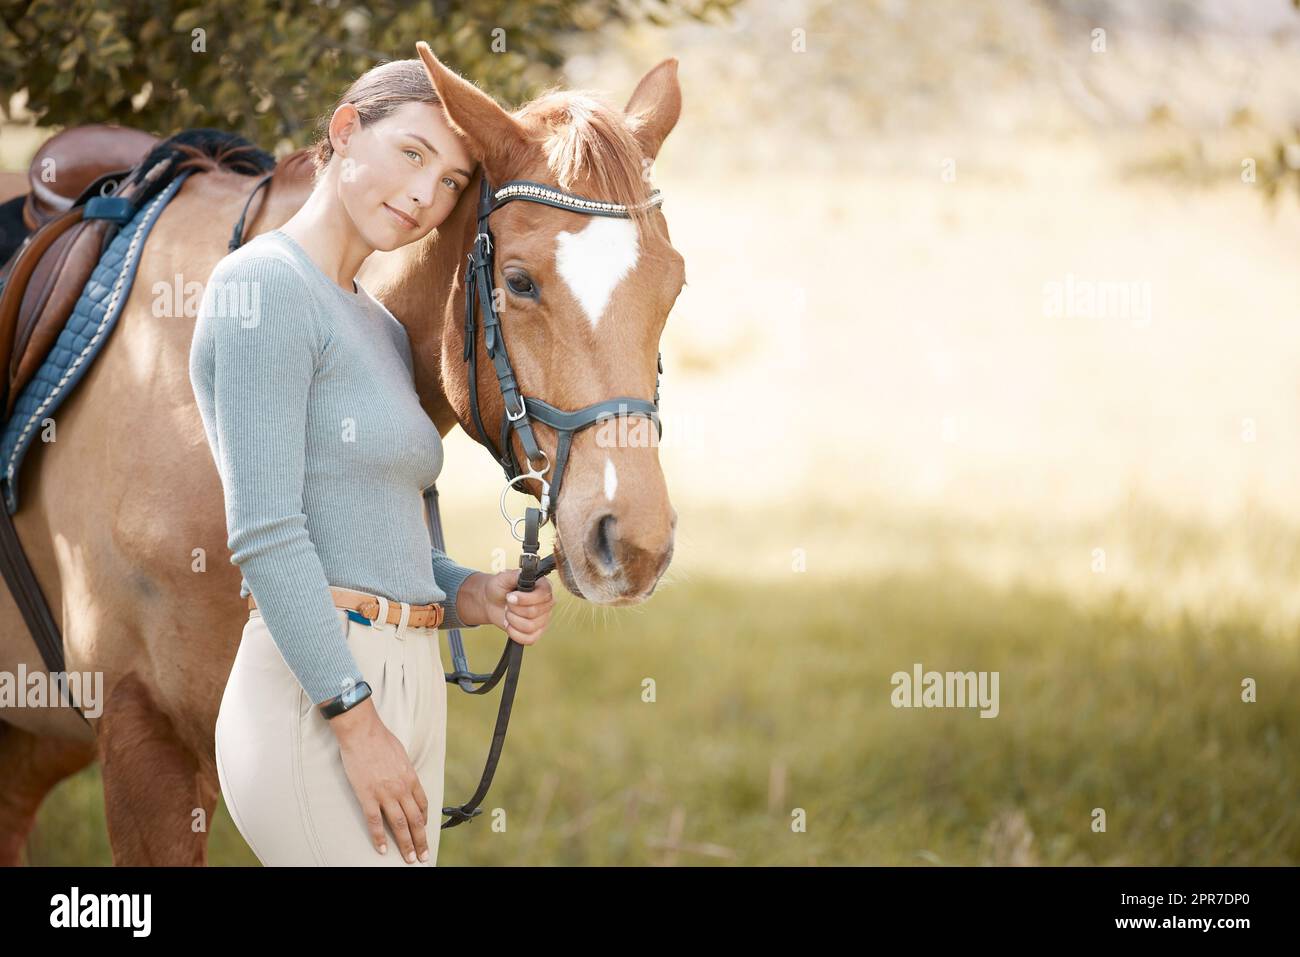 Un cheval est un bel animal. Une jeune femme attrayante debout avec son cheval dans une forêt. Banque D'Images